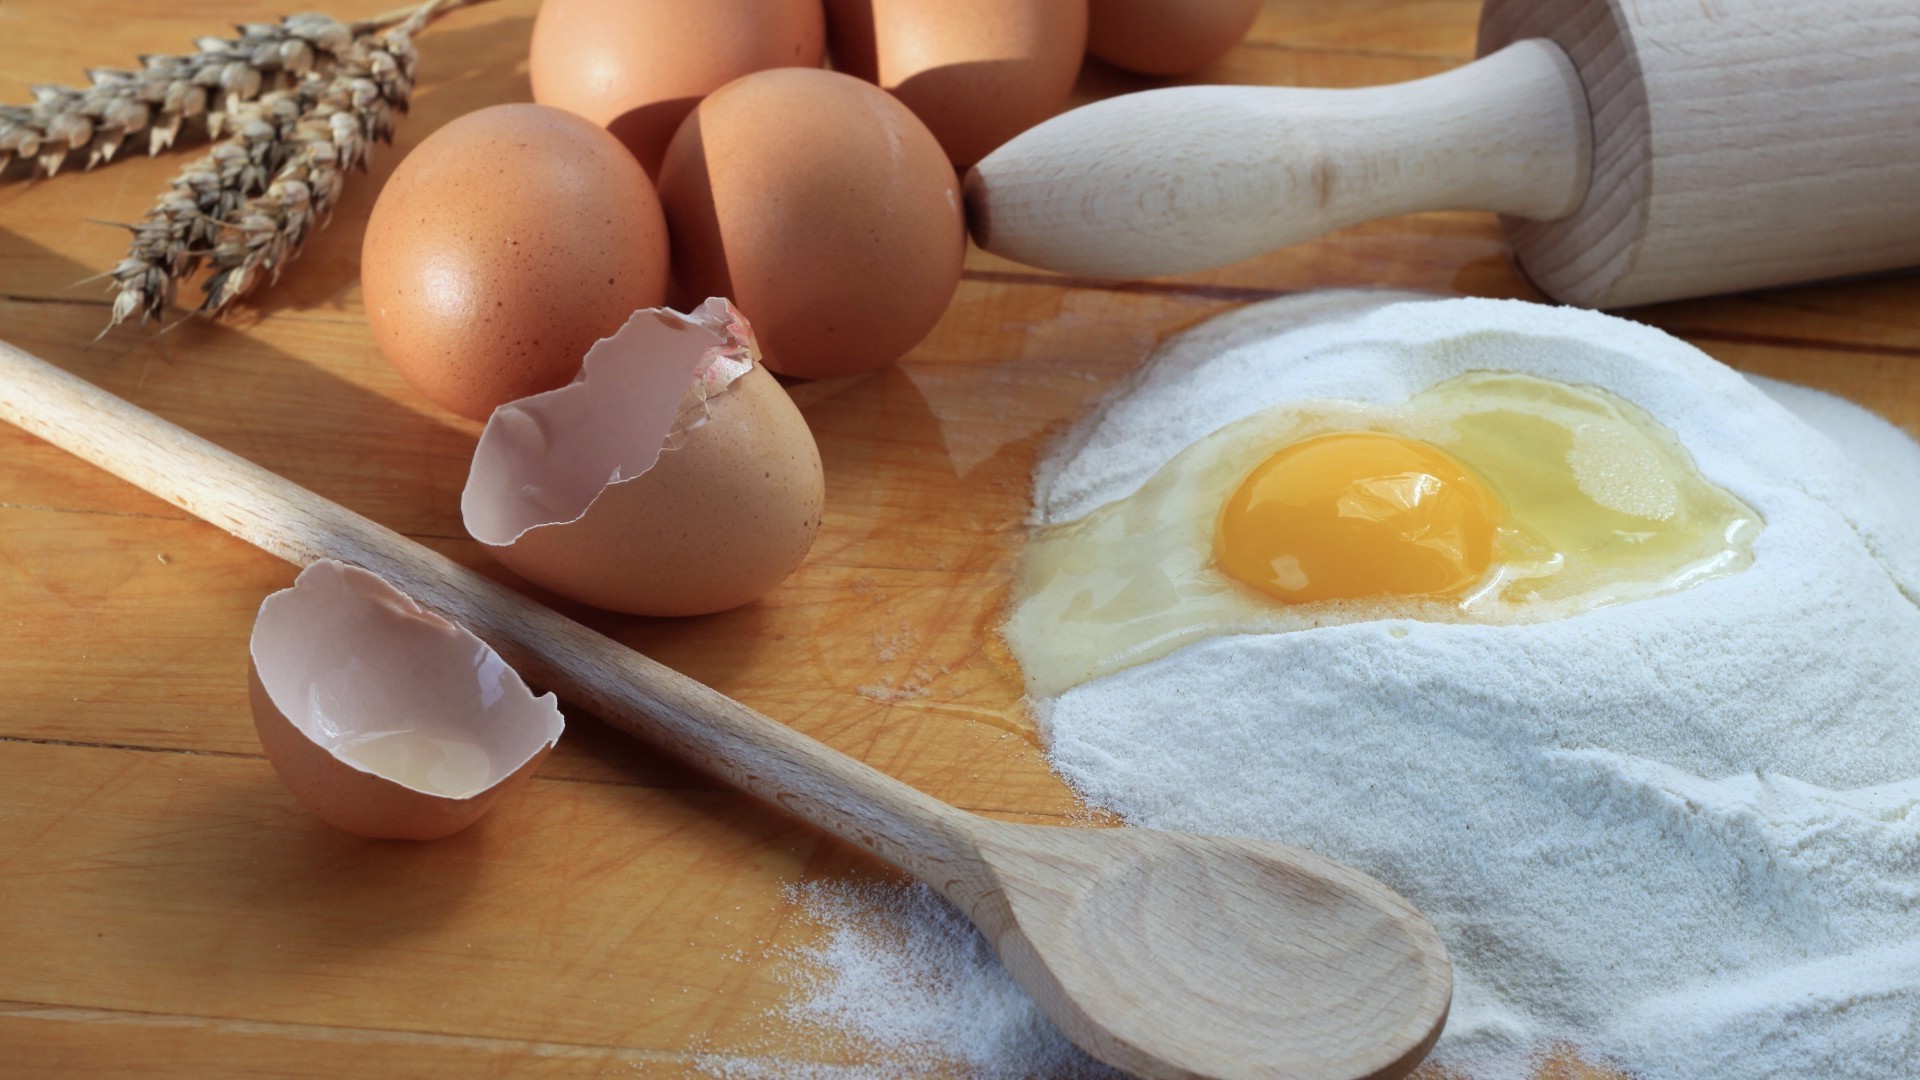 завтраки яйцо мука приготовление древесины еда яичный желток выпечки деревянные таблица ингредиенты домашние подготовка питание бабла традиционные рустик холестерин хлопья